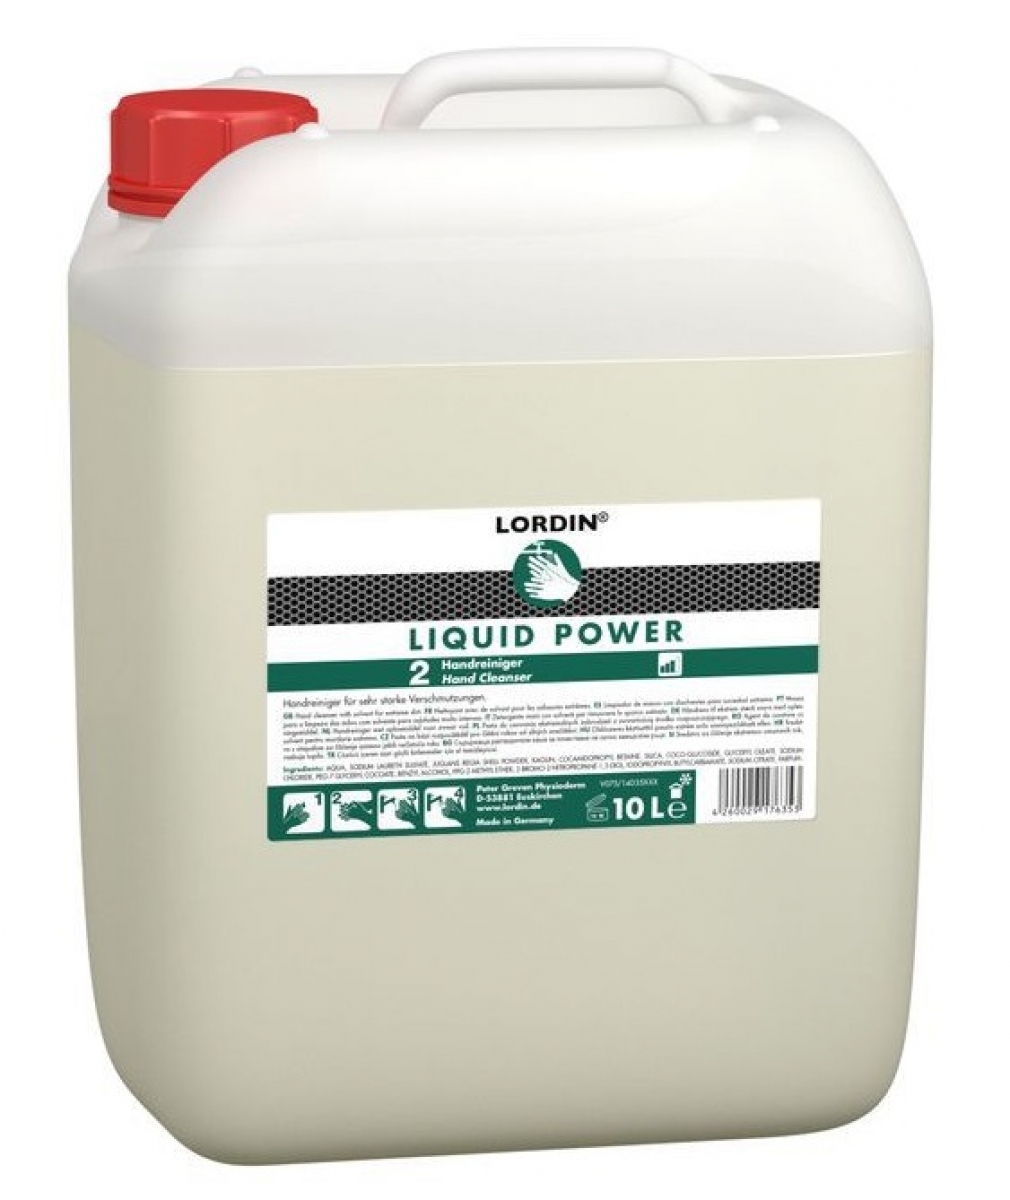 GREVEN-Hygiene, HAUTREINIGUNG, `Lordin Liquid Power`, 10 Liter Kanister